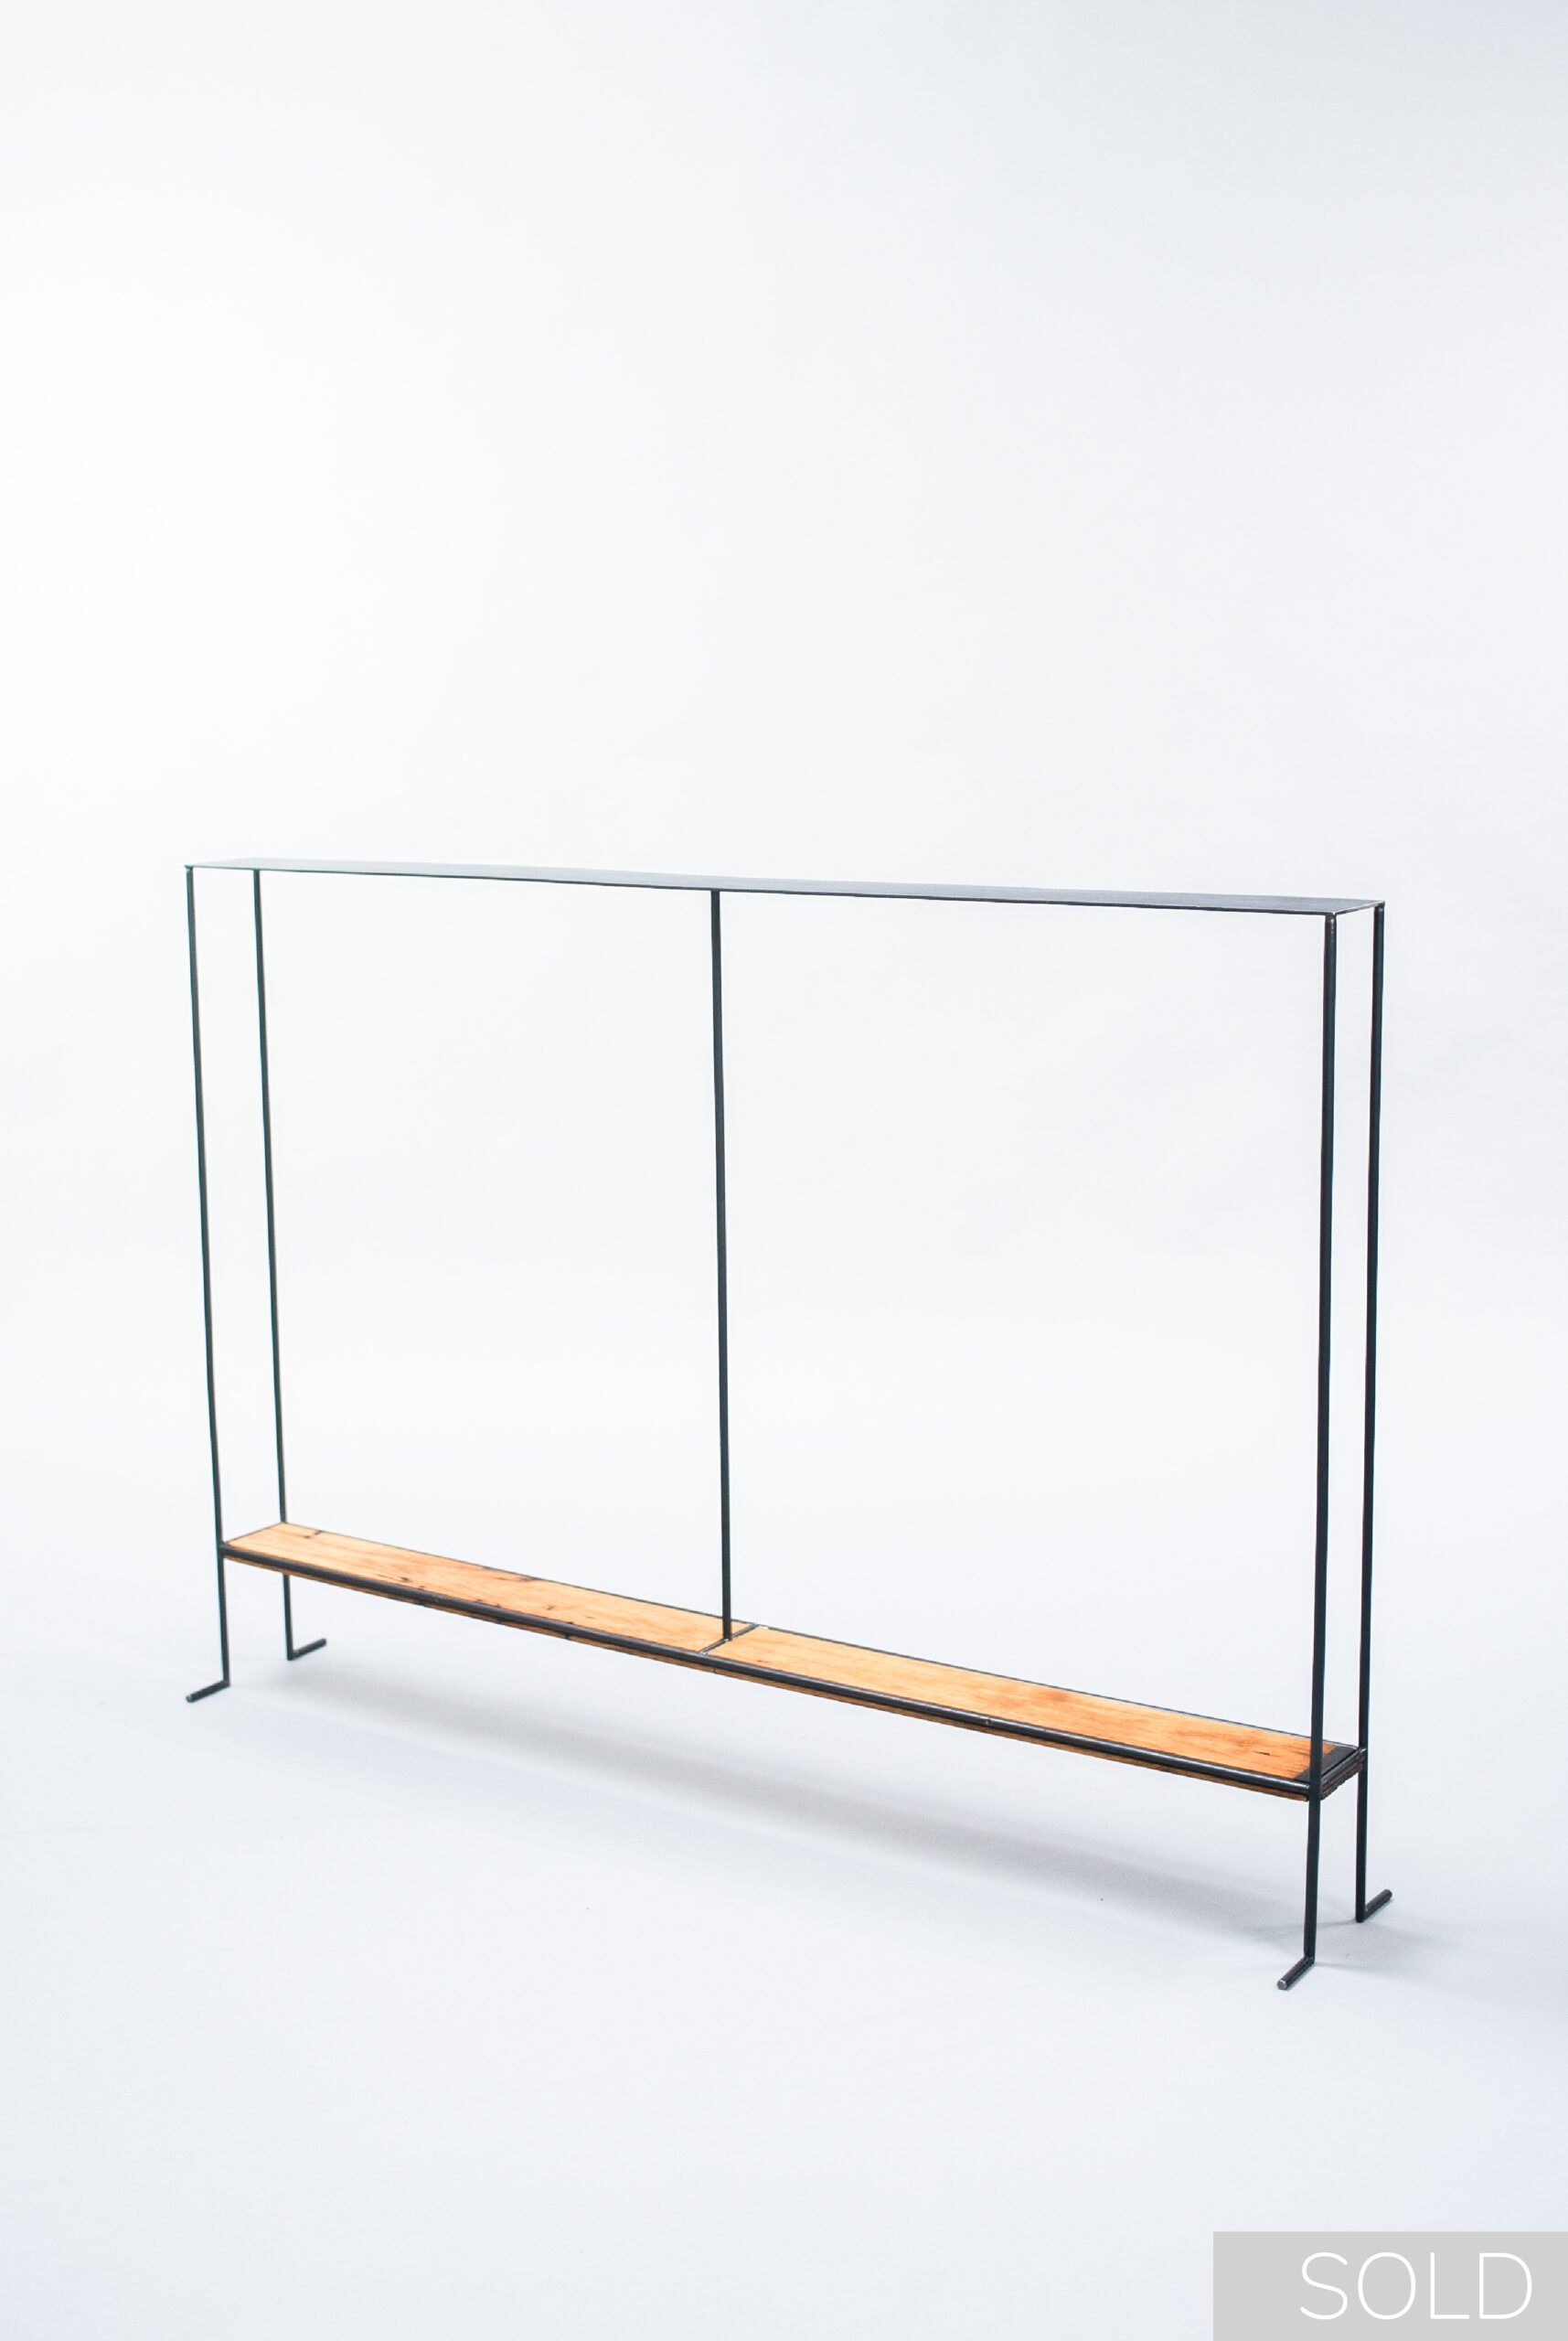 Designer Table_So Thin_Unperfect Design_Sold-01-01